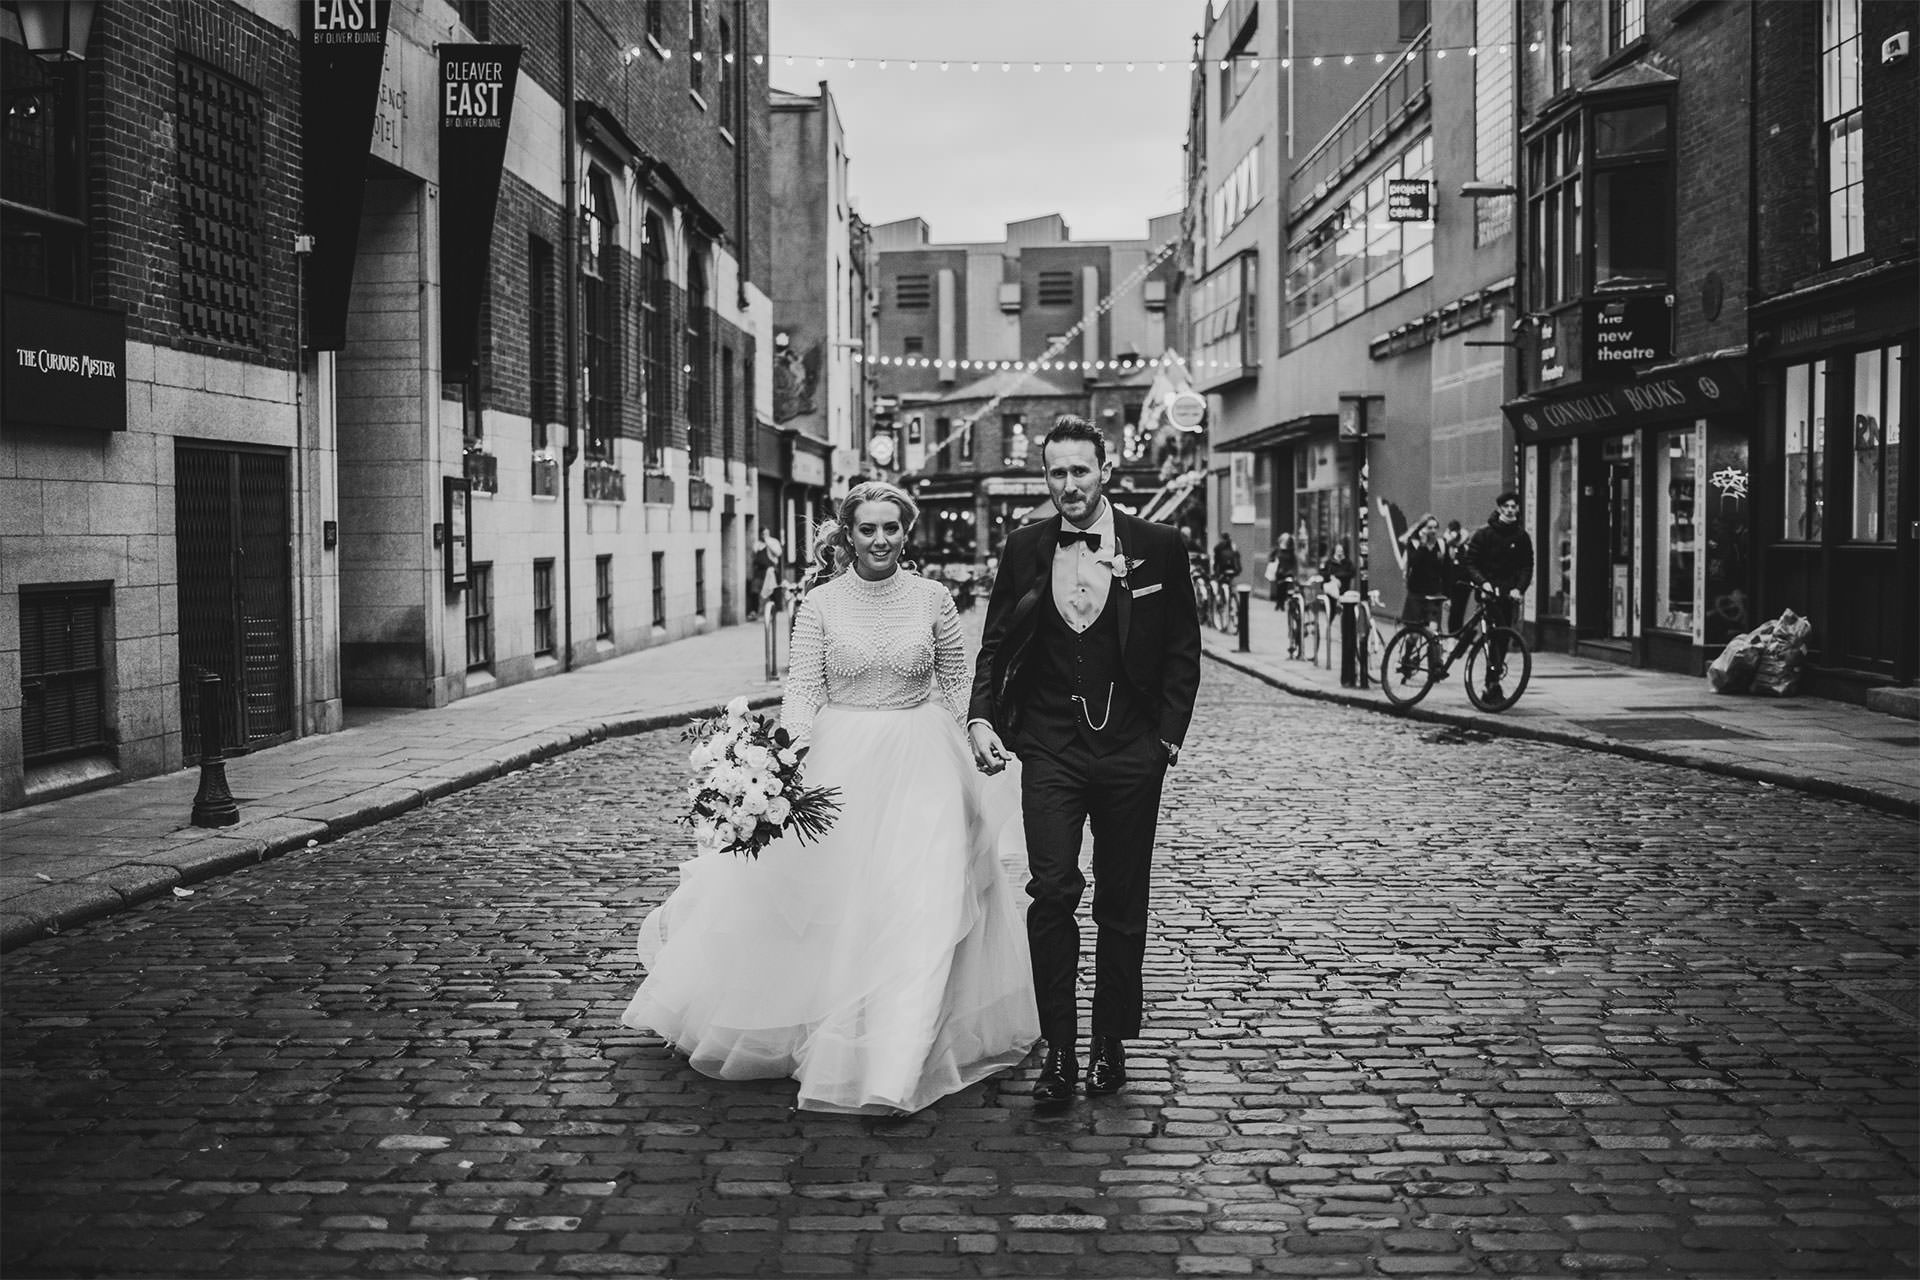 Dublin City wedding photos